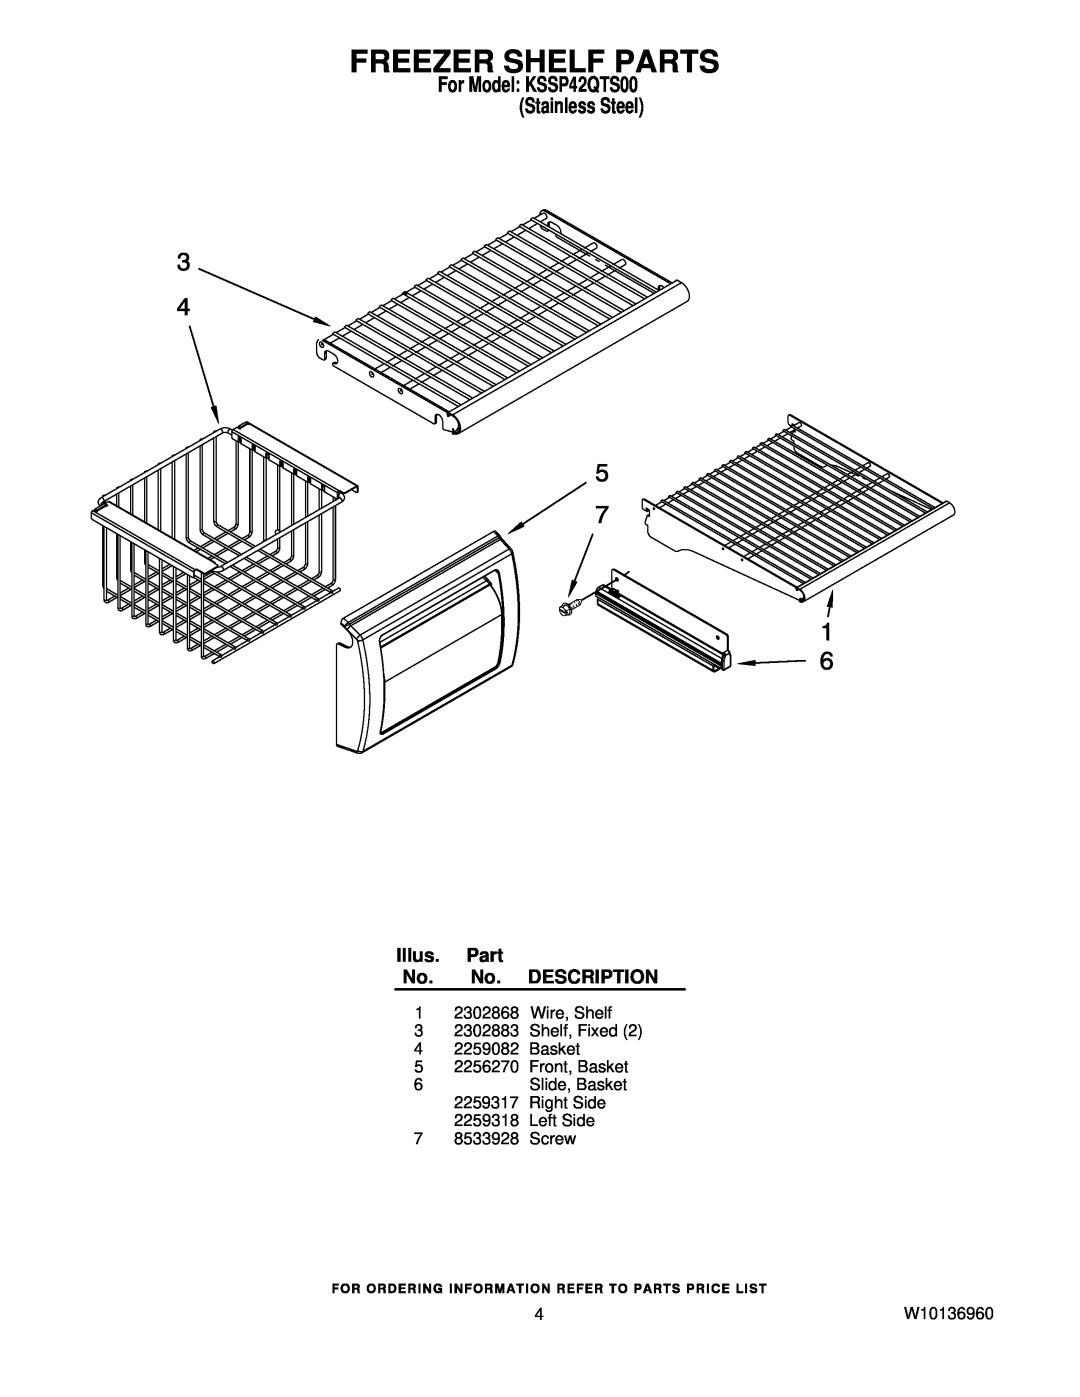 KitchenAid manual Freezer Shelf Parts, For Model KSSP42QTS00 Stainless Steel, Illus. Part No. No. DESCRIPTION, W10136960 